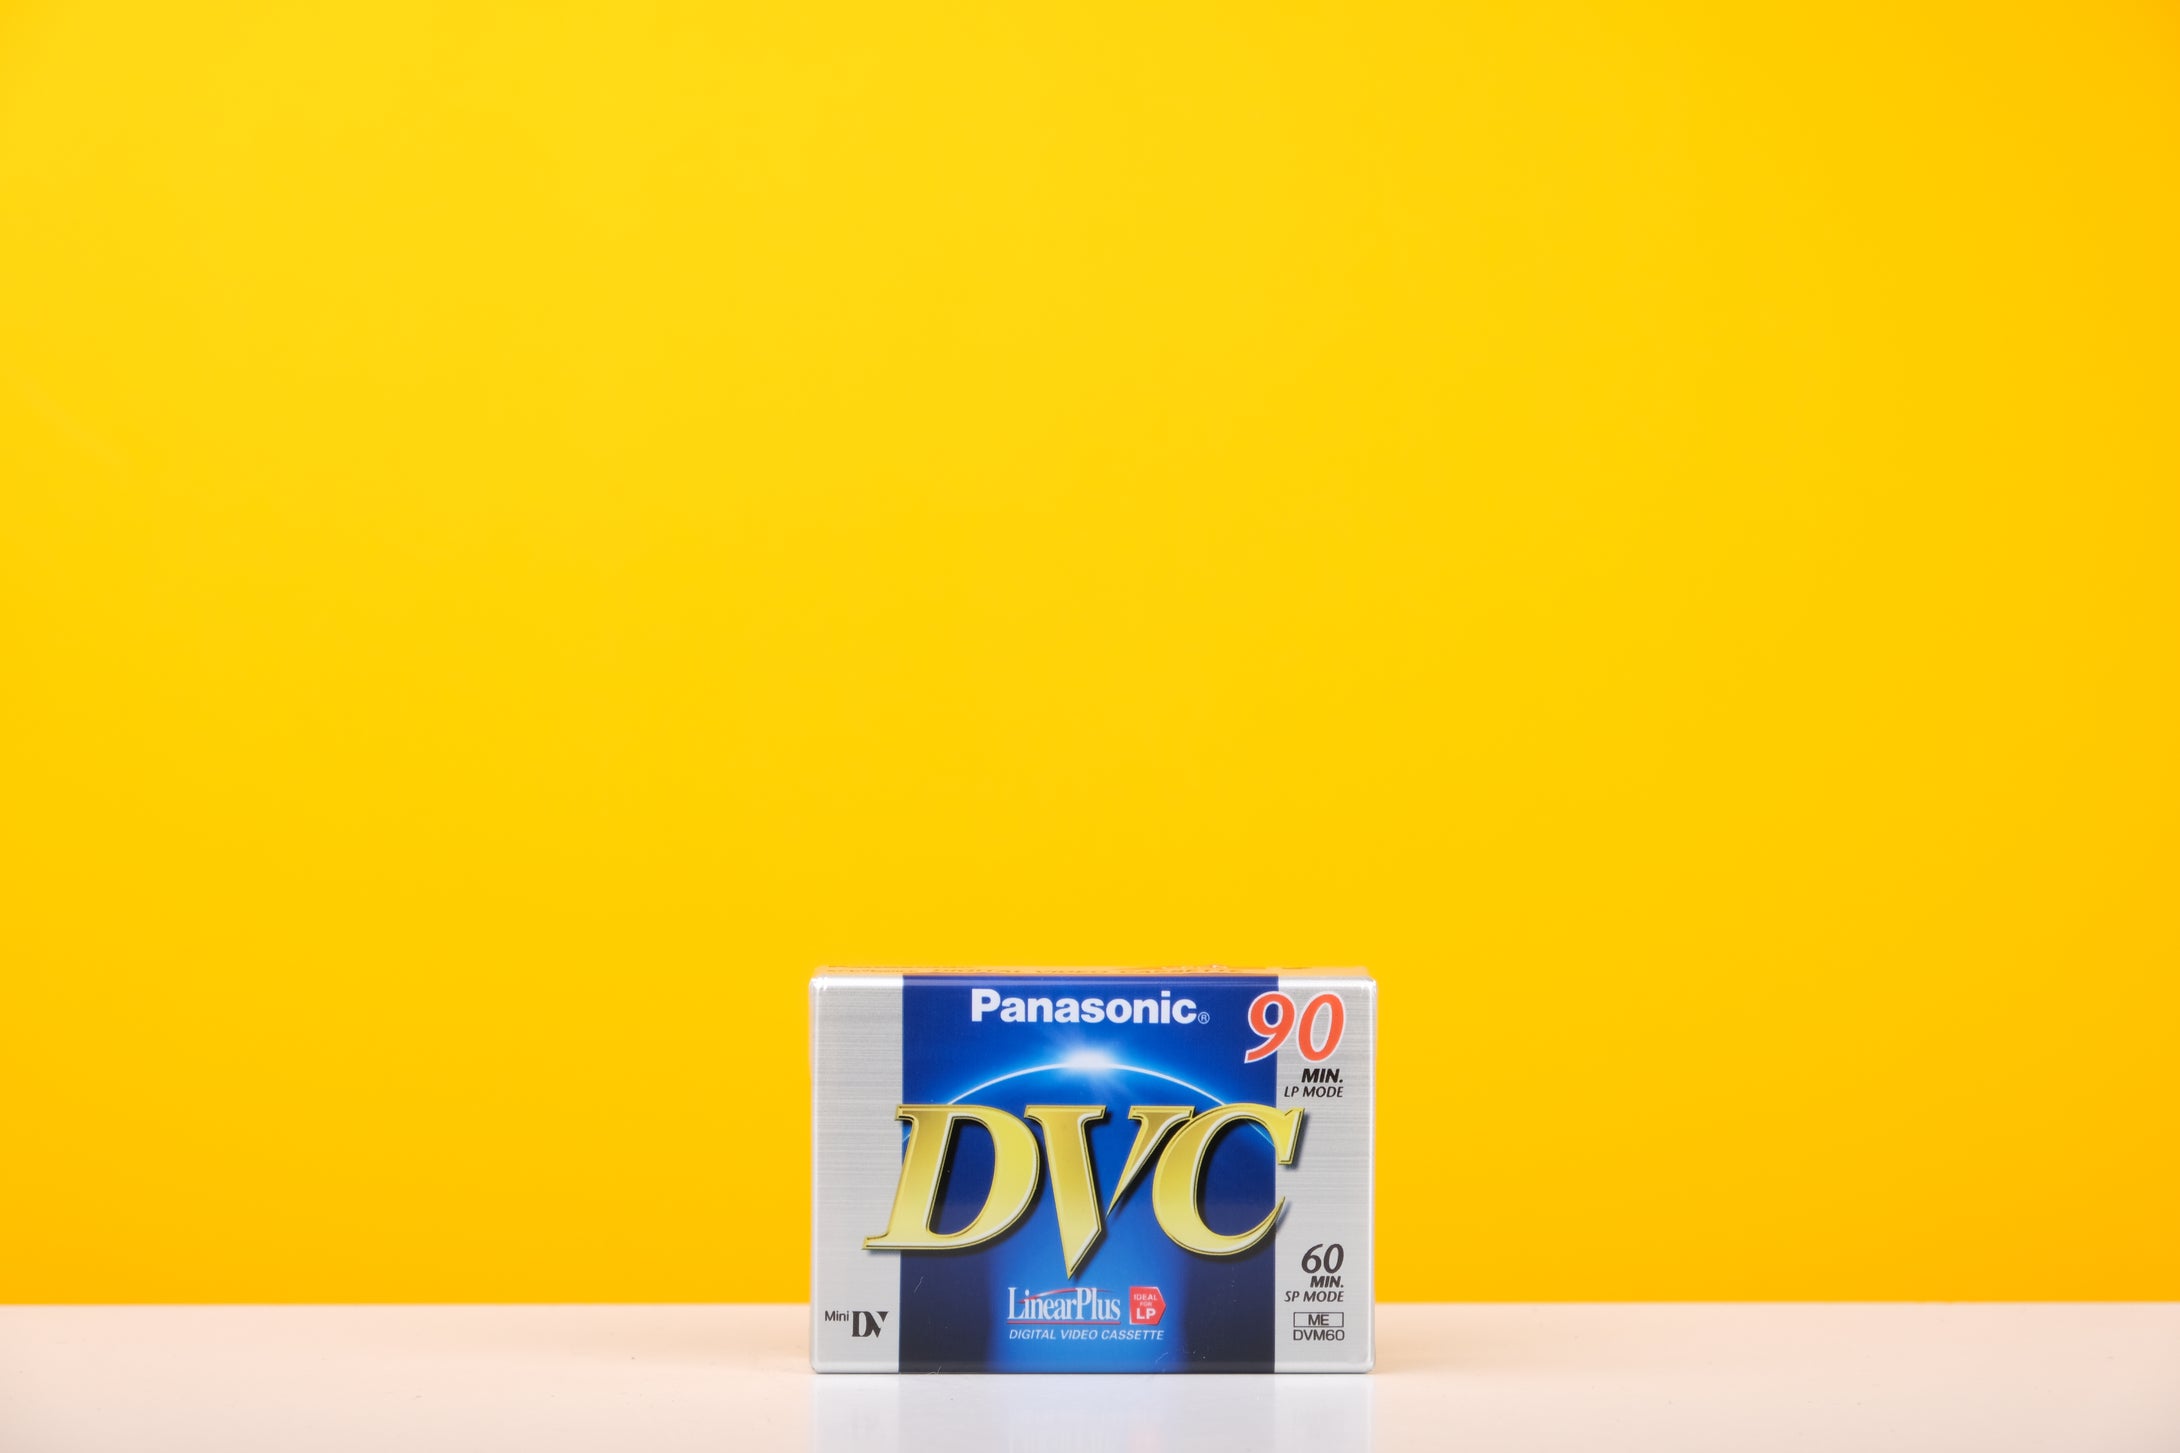 Panasonic DVC Mini DV Digital Video Cassette SP 60 min LP 90 